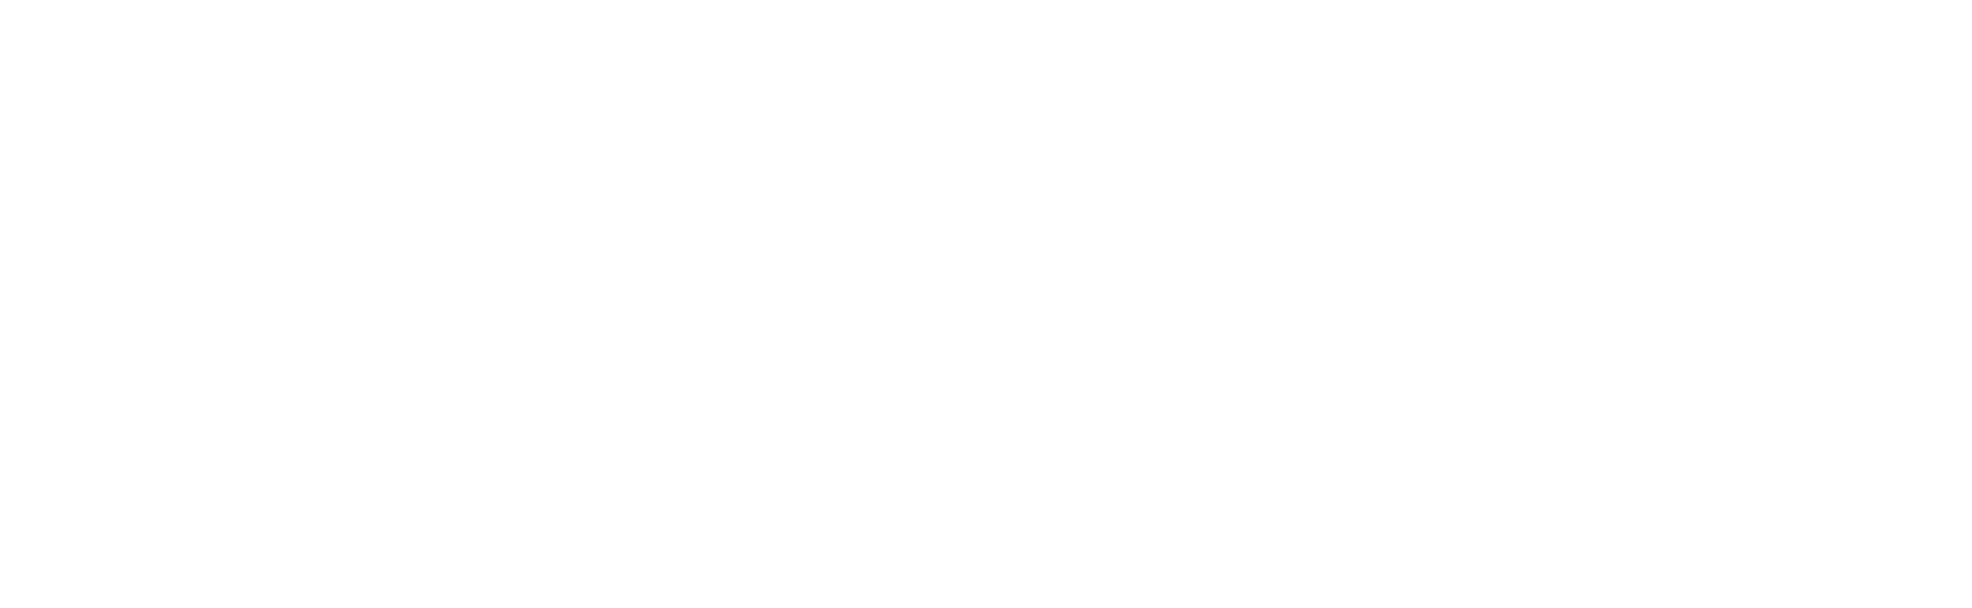 EnovSport_logos-03